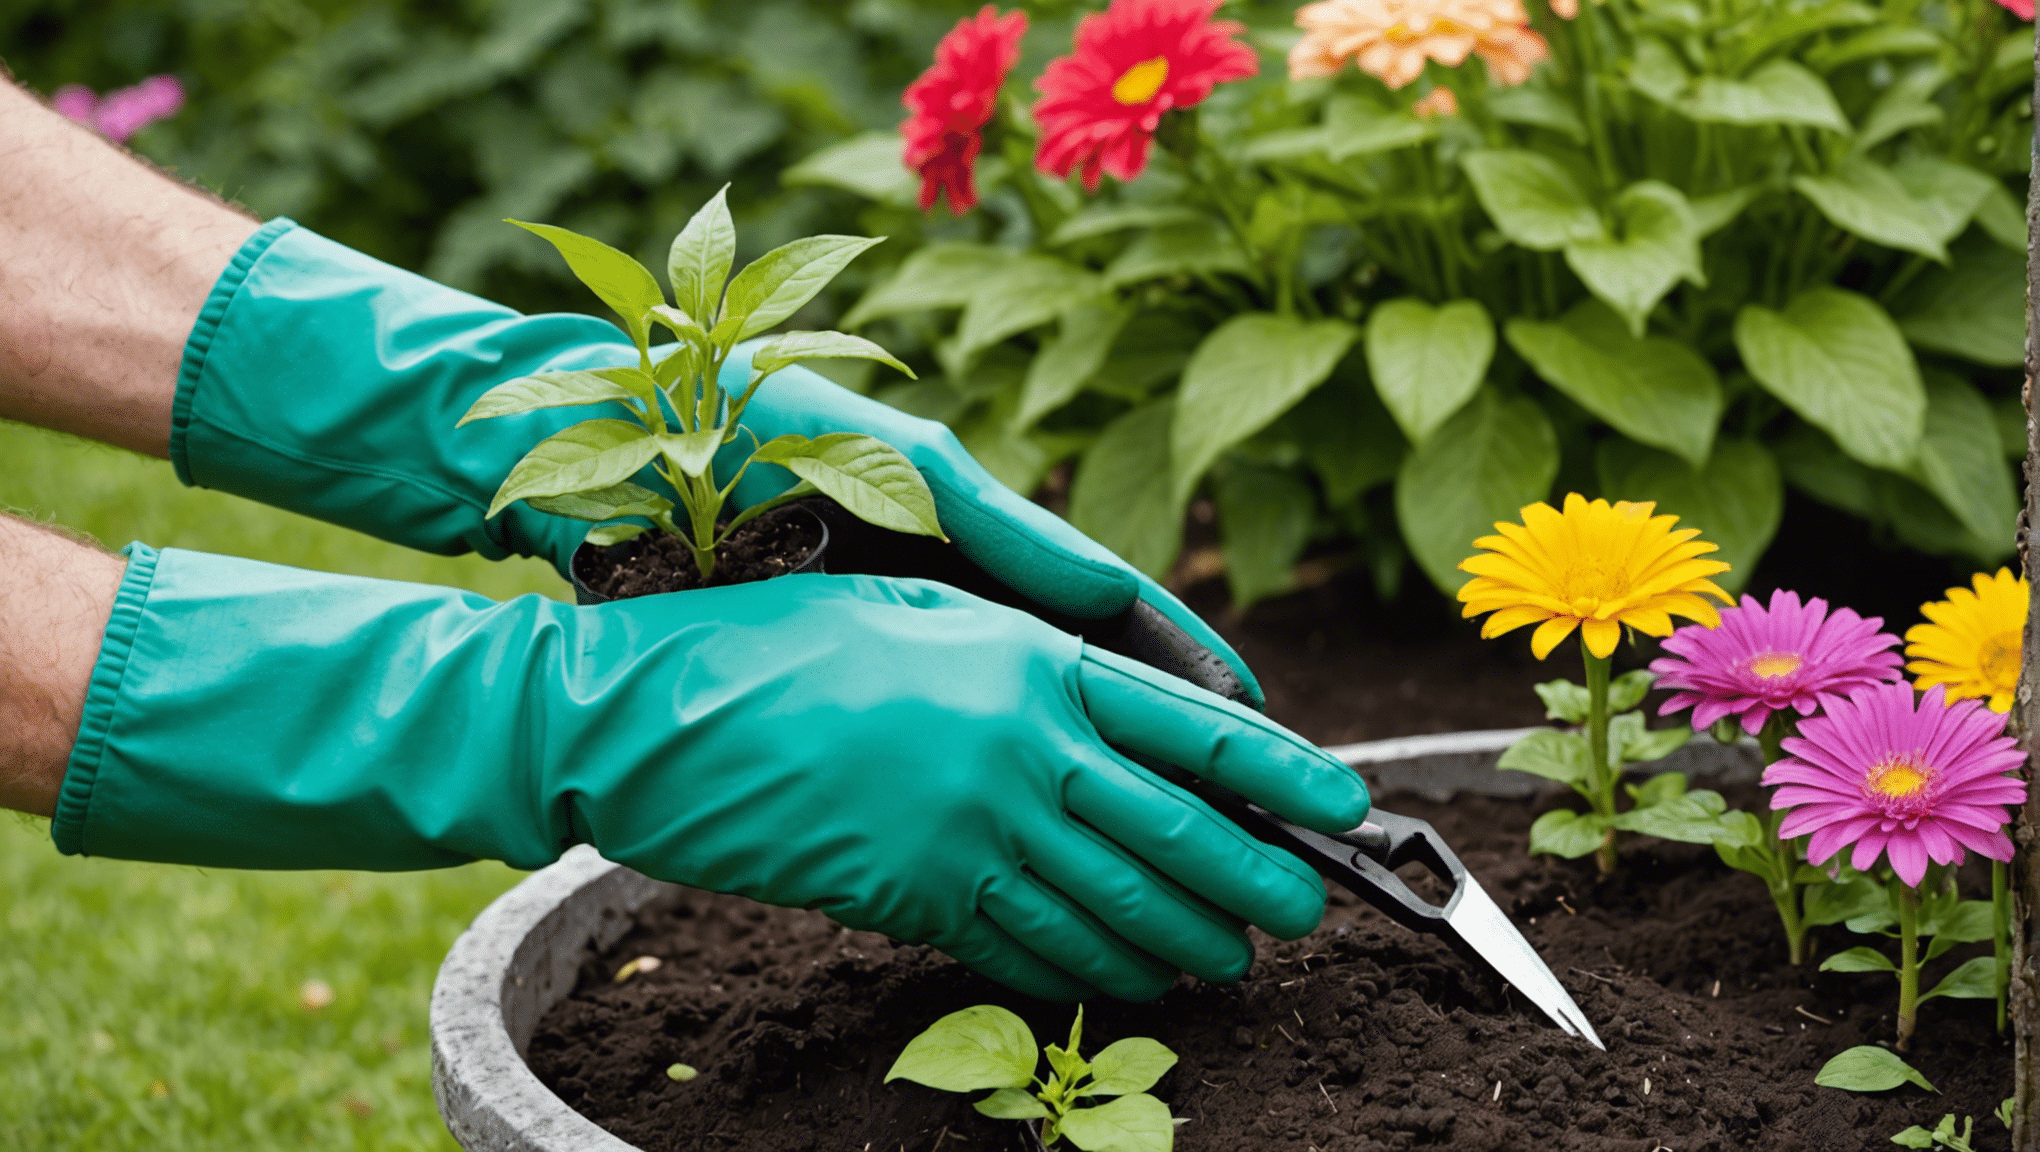 Descubra la comodidad de los guantes de jardinería con garras y transforme su experiencia de jardinería con facilidad y eficiencia.